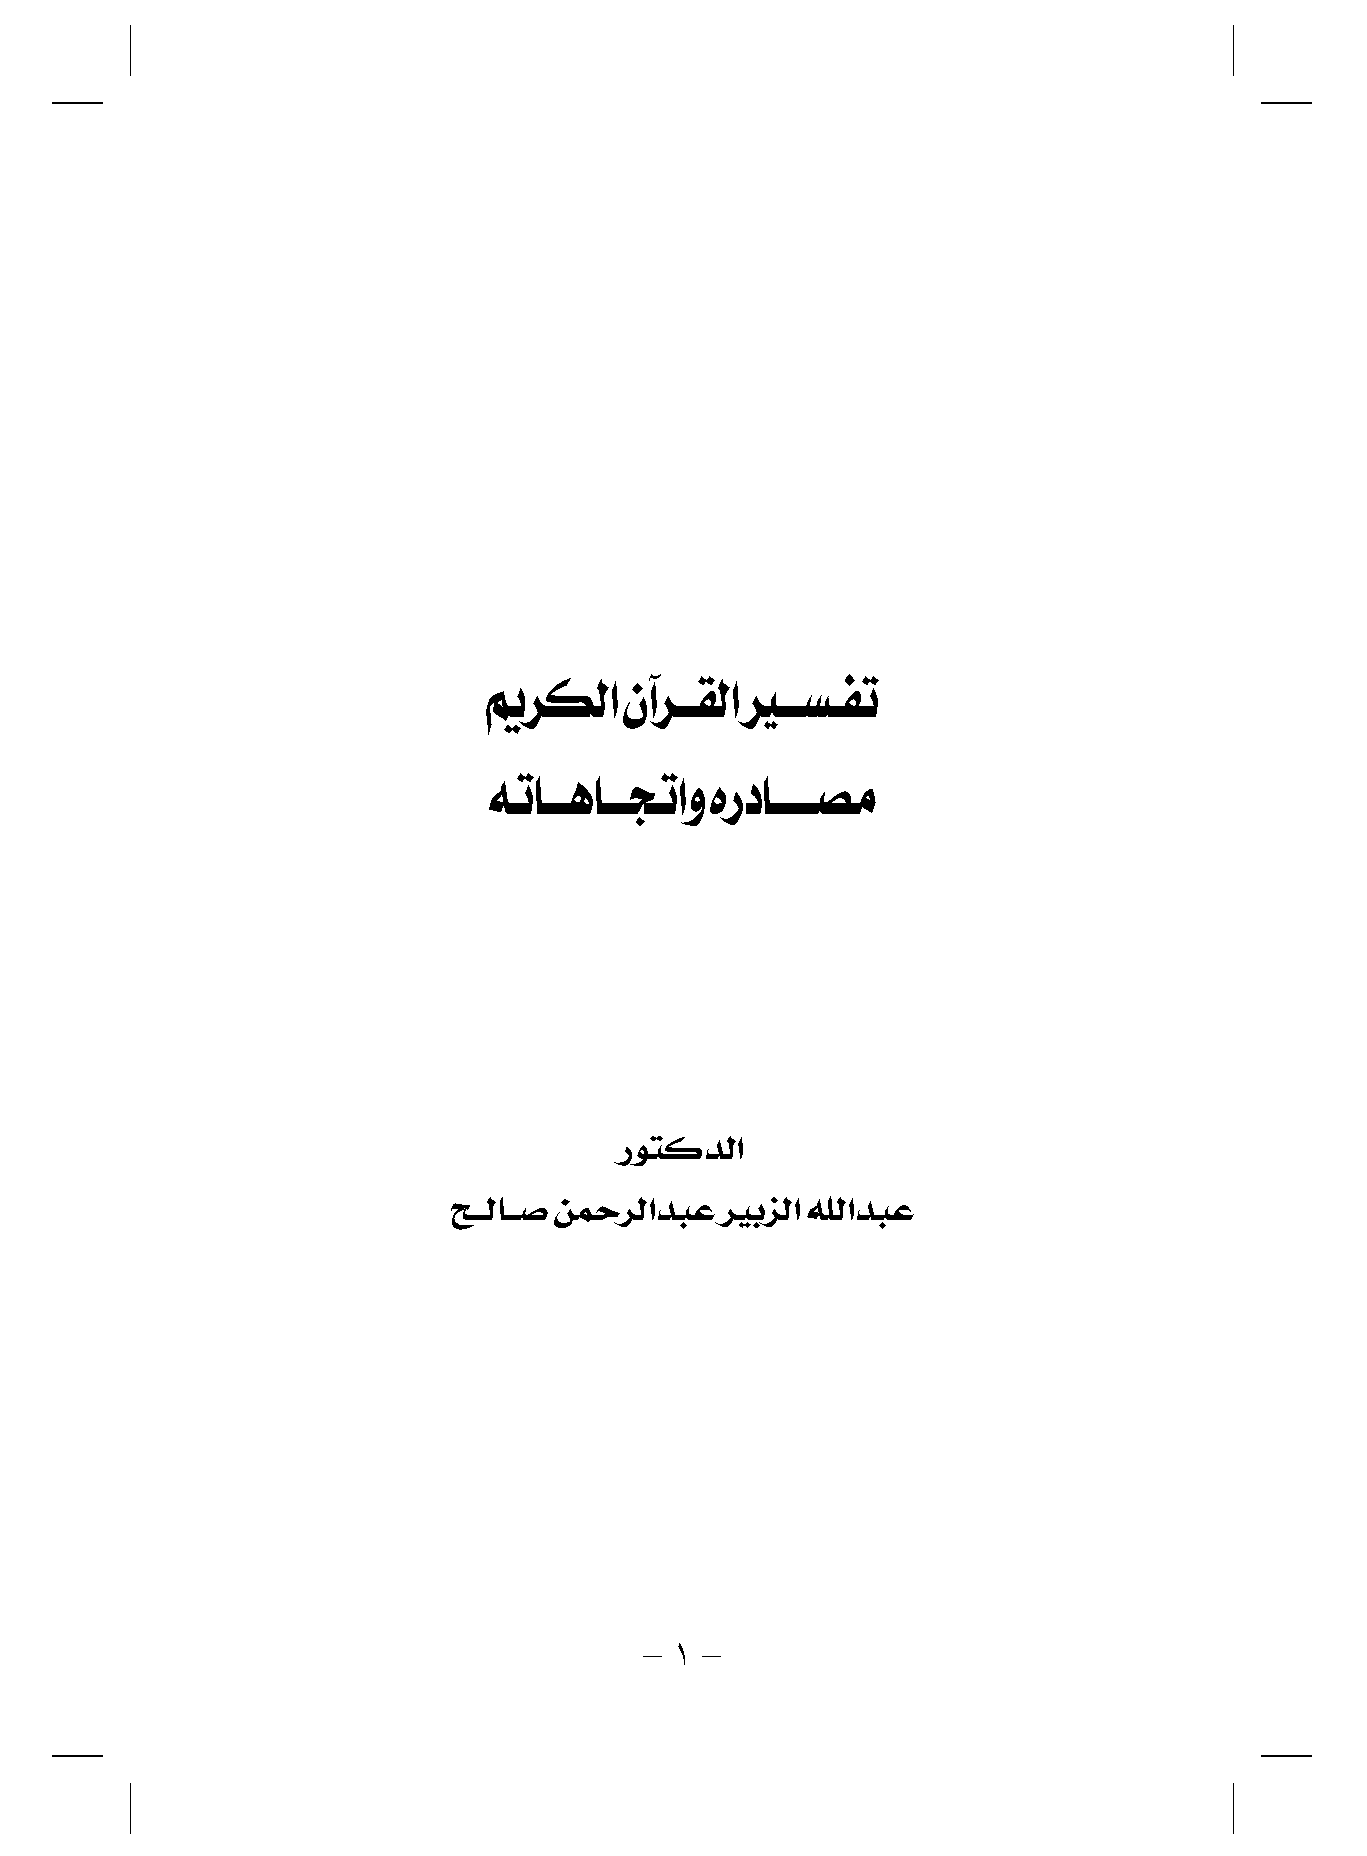 تحميل كتاب تفسير القرآن الكريم مصادره واتجاهاته للمؤلف: الدكتور عبد الله الزبير عبد الرحمن صالح